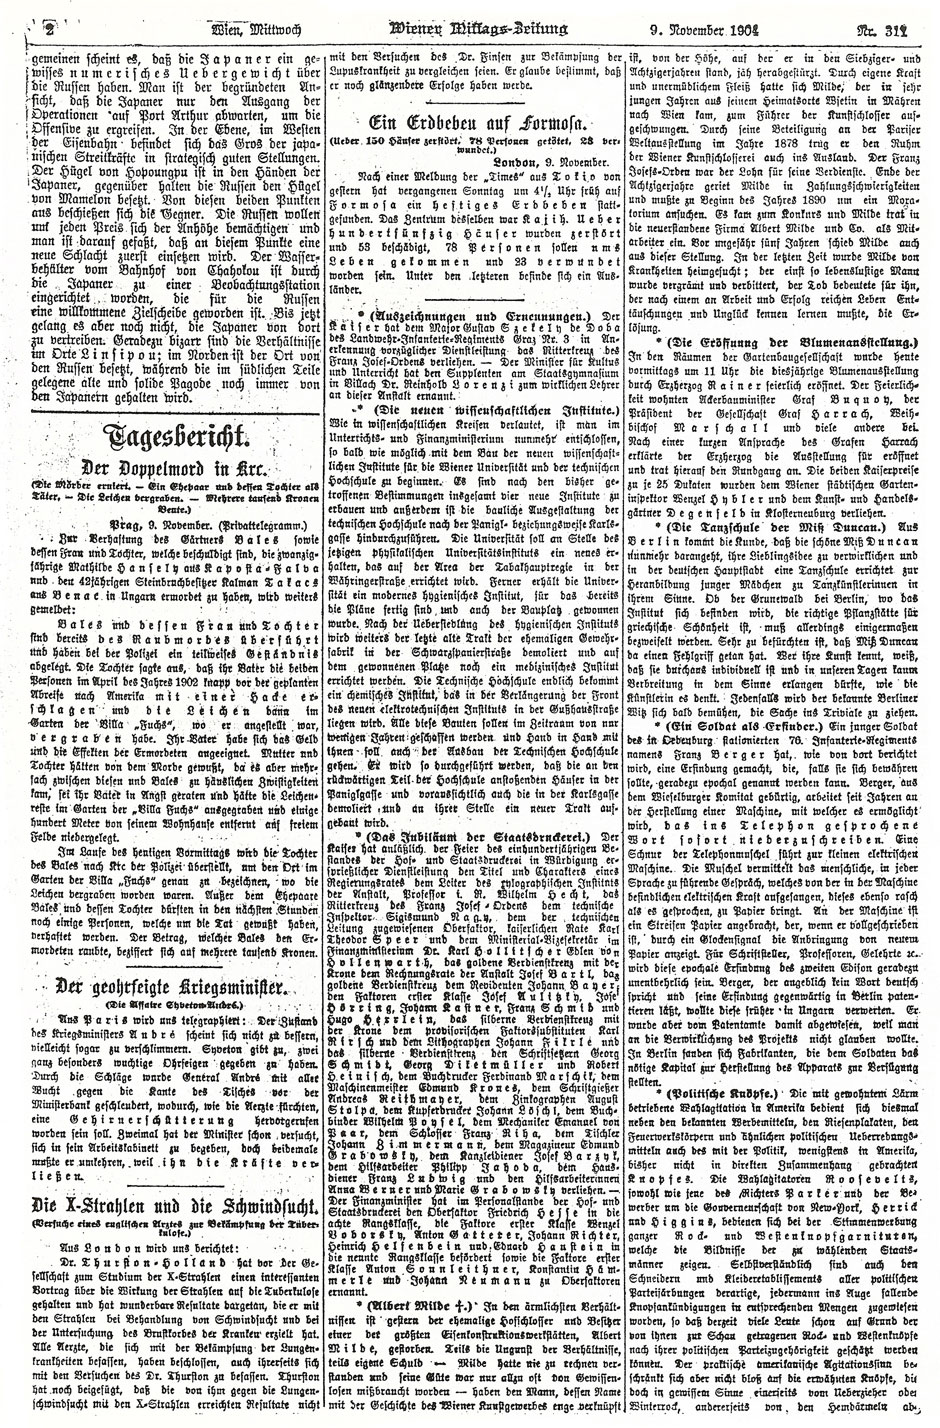 Wiener Mittags-Zeitung, 9.11.1904; Seite 2